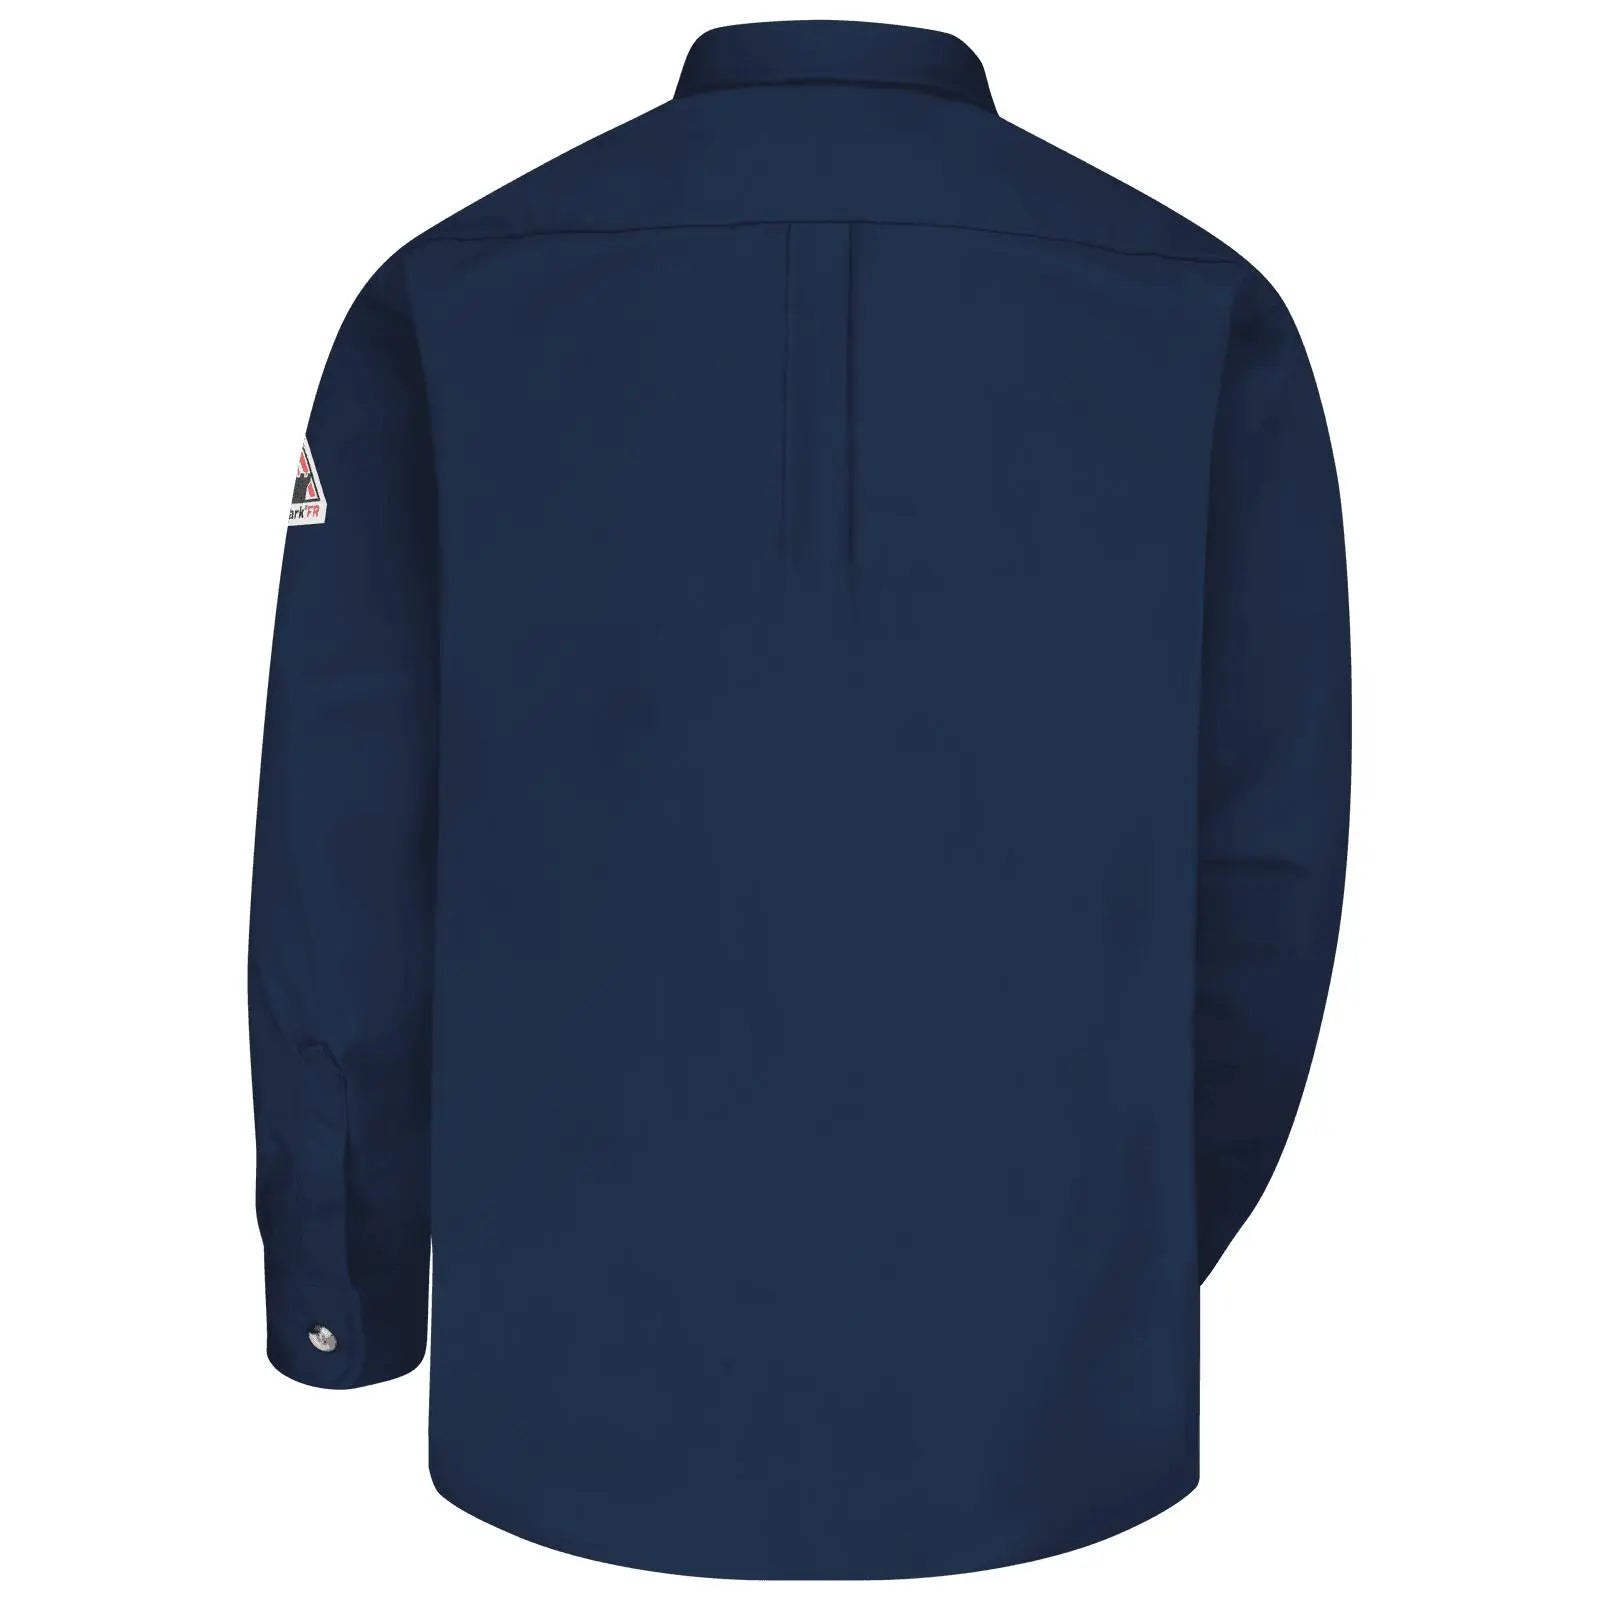 Bulwark - 7oz Dress Uniform Shirt CAT 2, Navy - Becker Safety and Supply